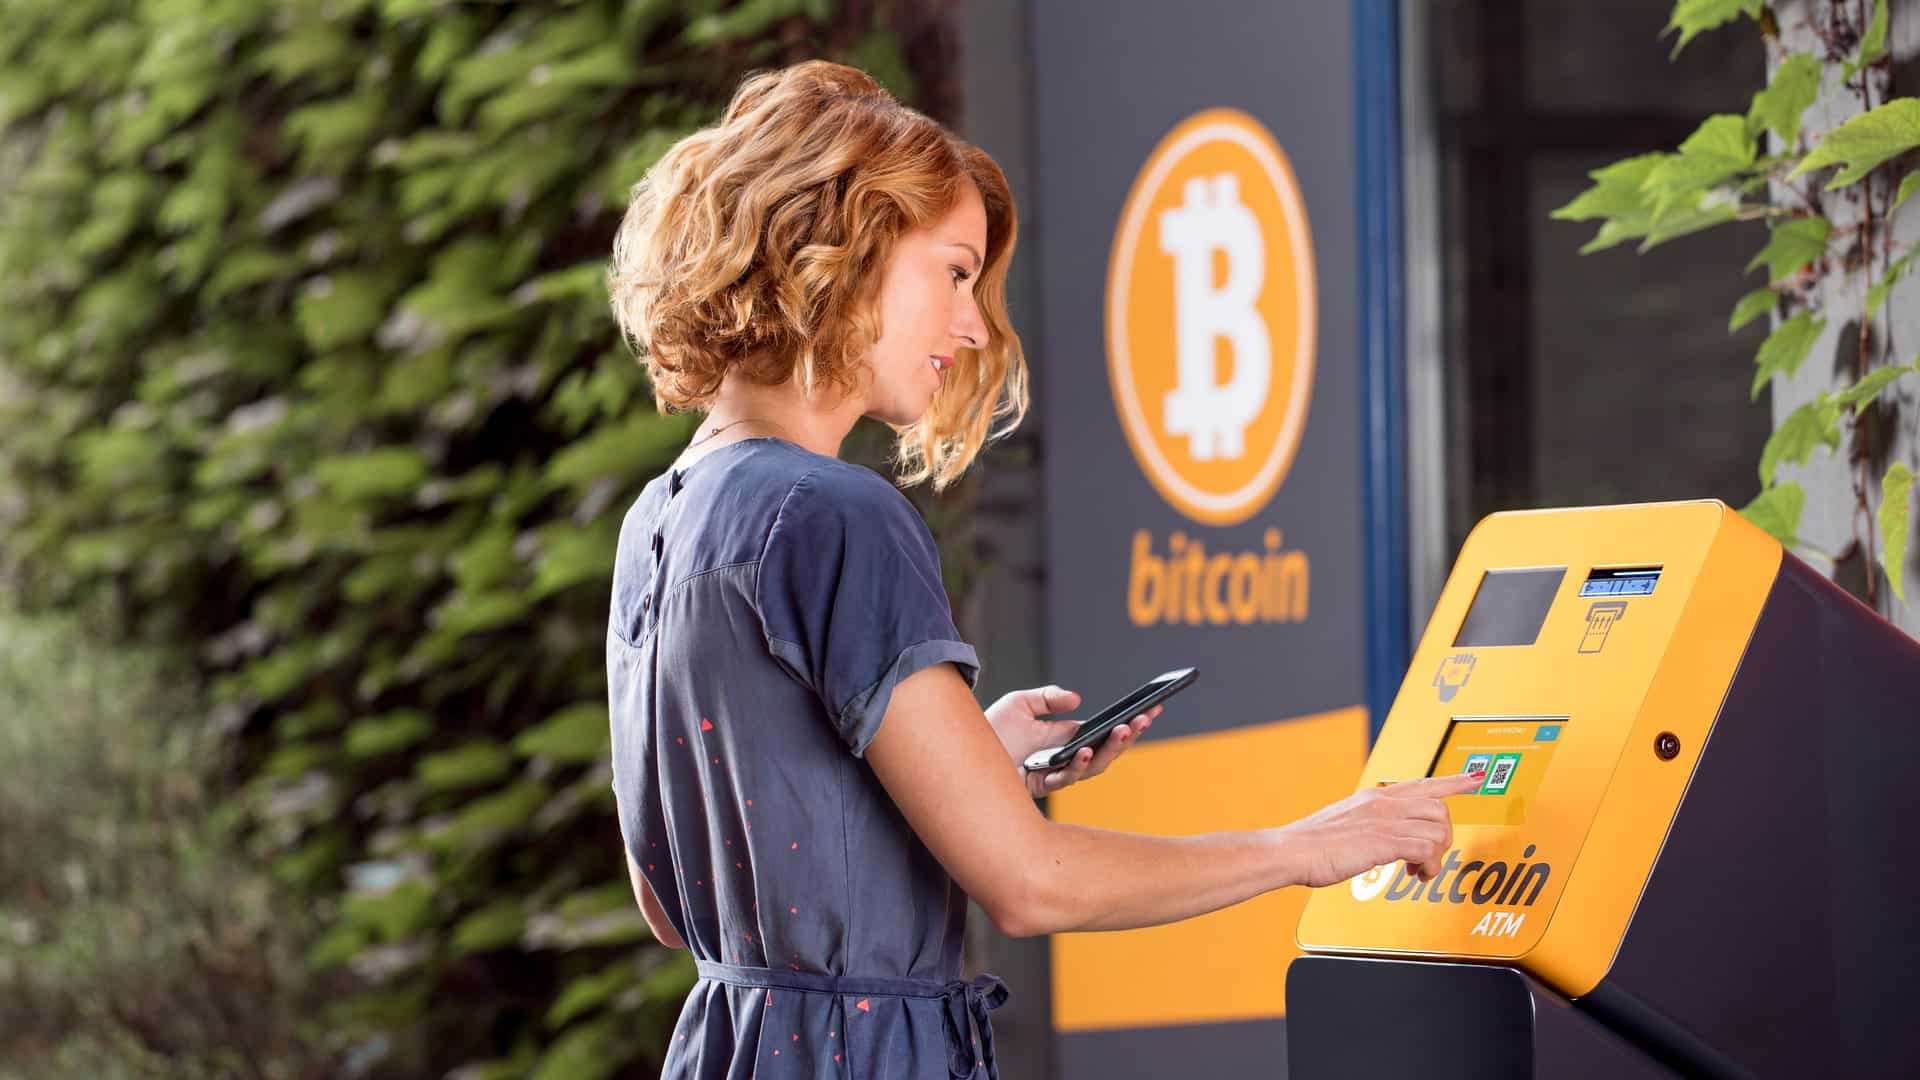 Využívate BTC automaty? Pozor, hackeri začali vykrádať bitcoinmaty pomocou nových kyber-útokov!